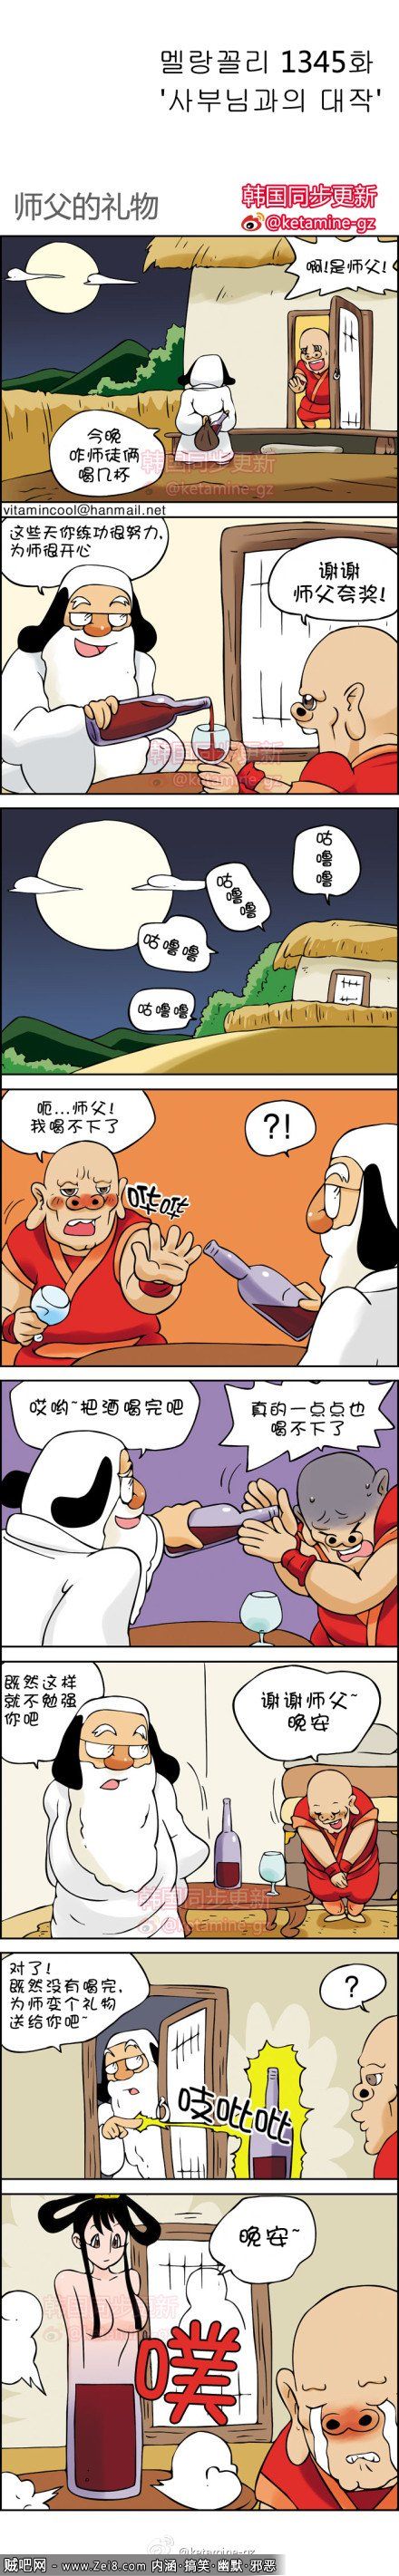 [贼吧网师傅系列漫画]：邪恶的师父